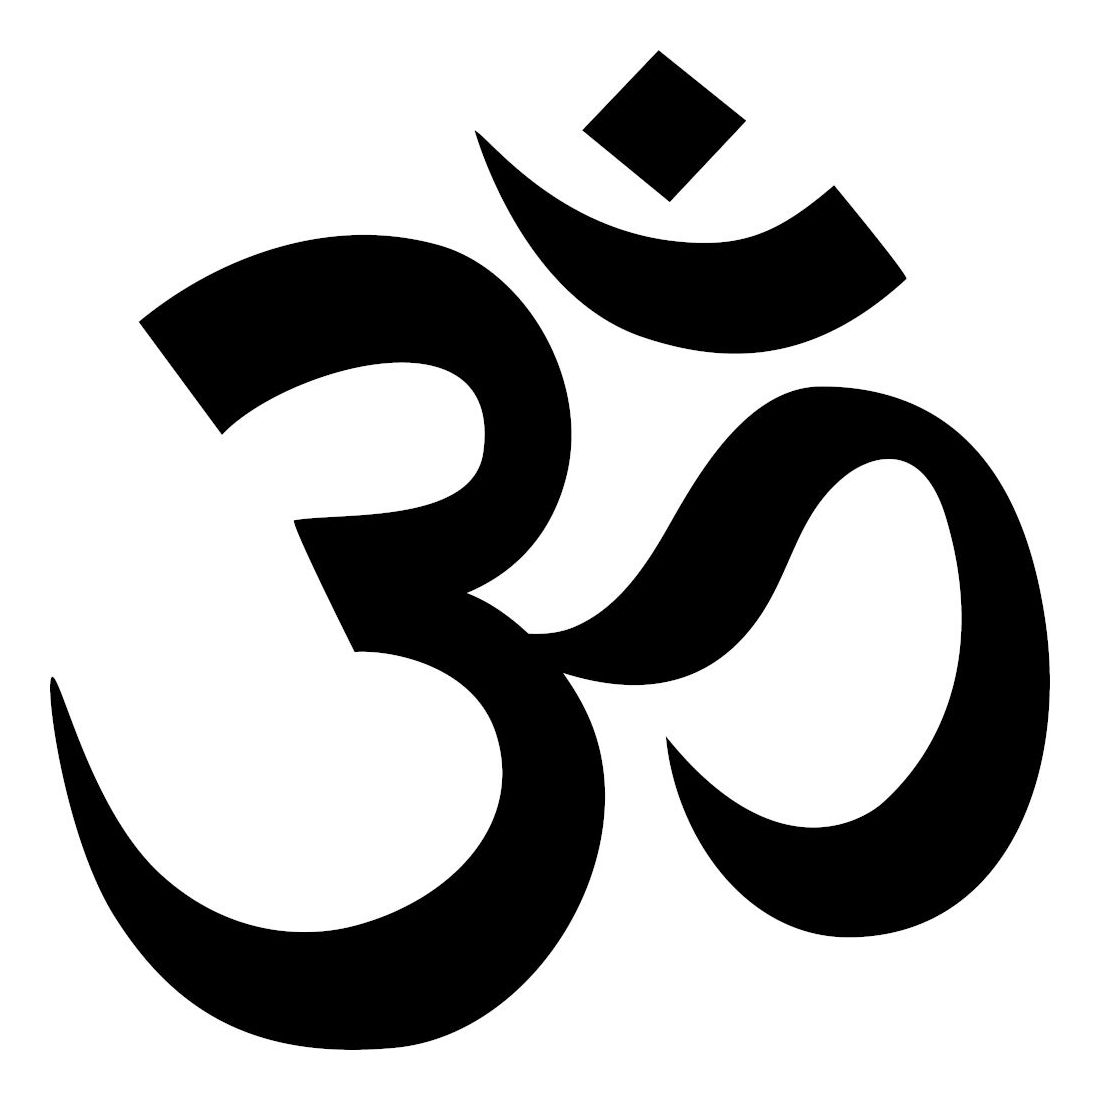 Om Yoga, Yoga Sequences, Benefits, Variations, and Sanskrit Pronunciation